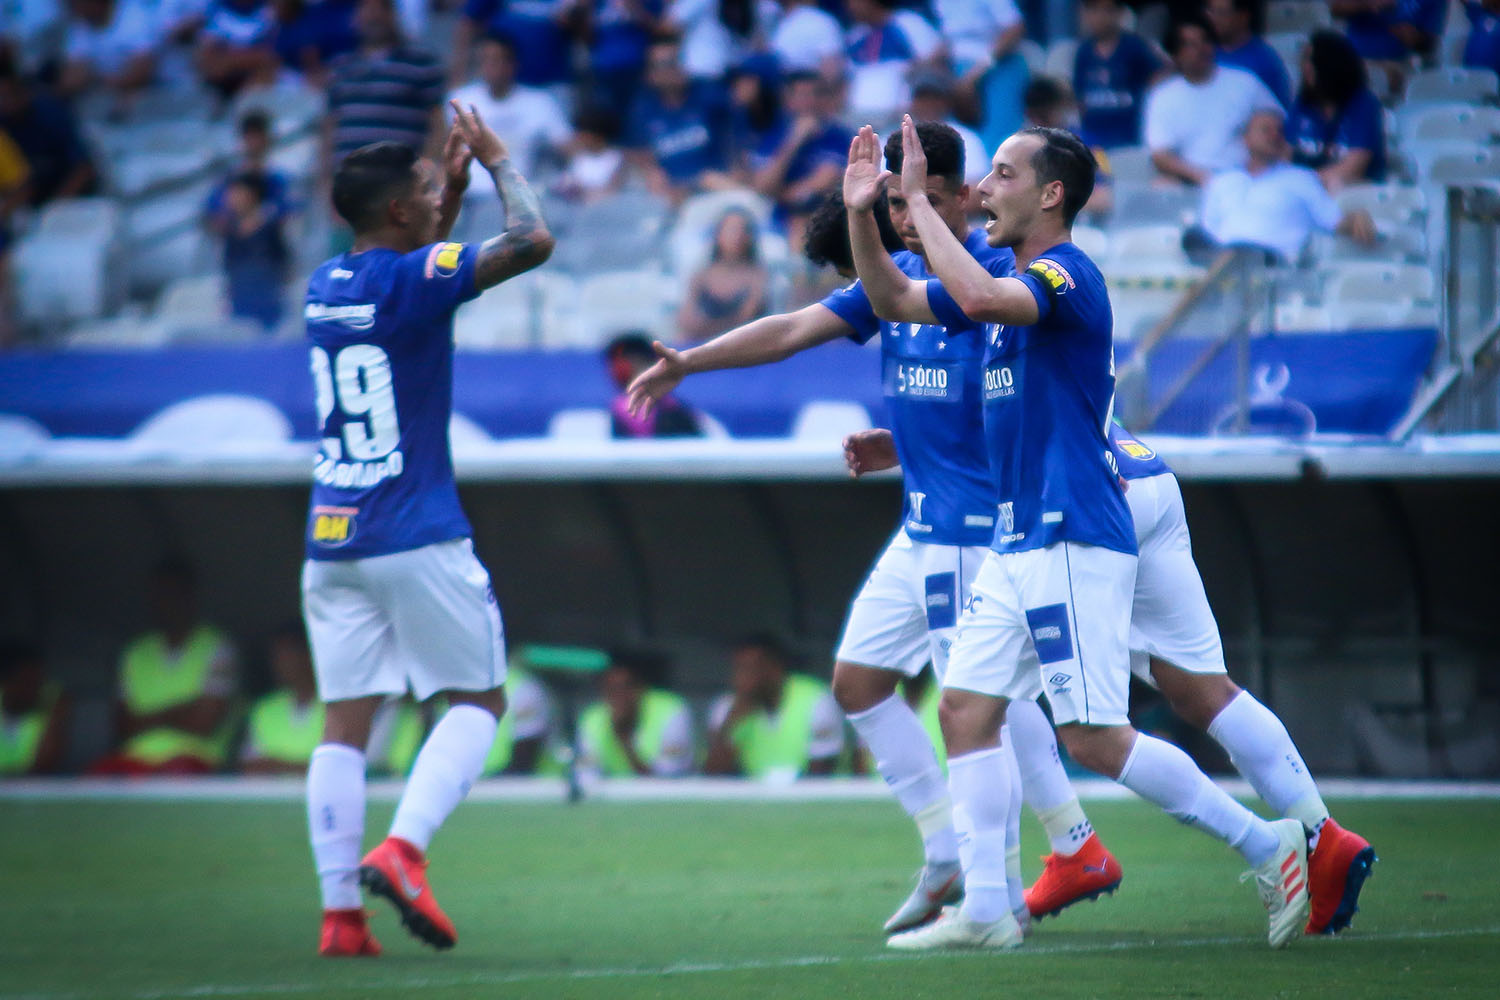 Facebook estreia transmissões da Libertadores com Huracán x Cruzeiro